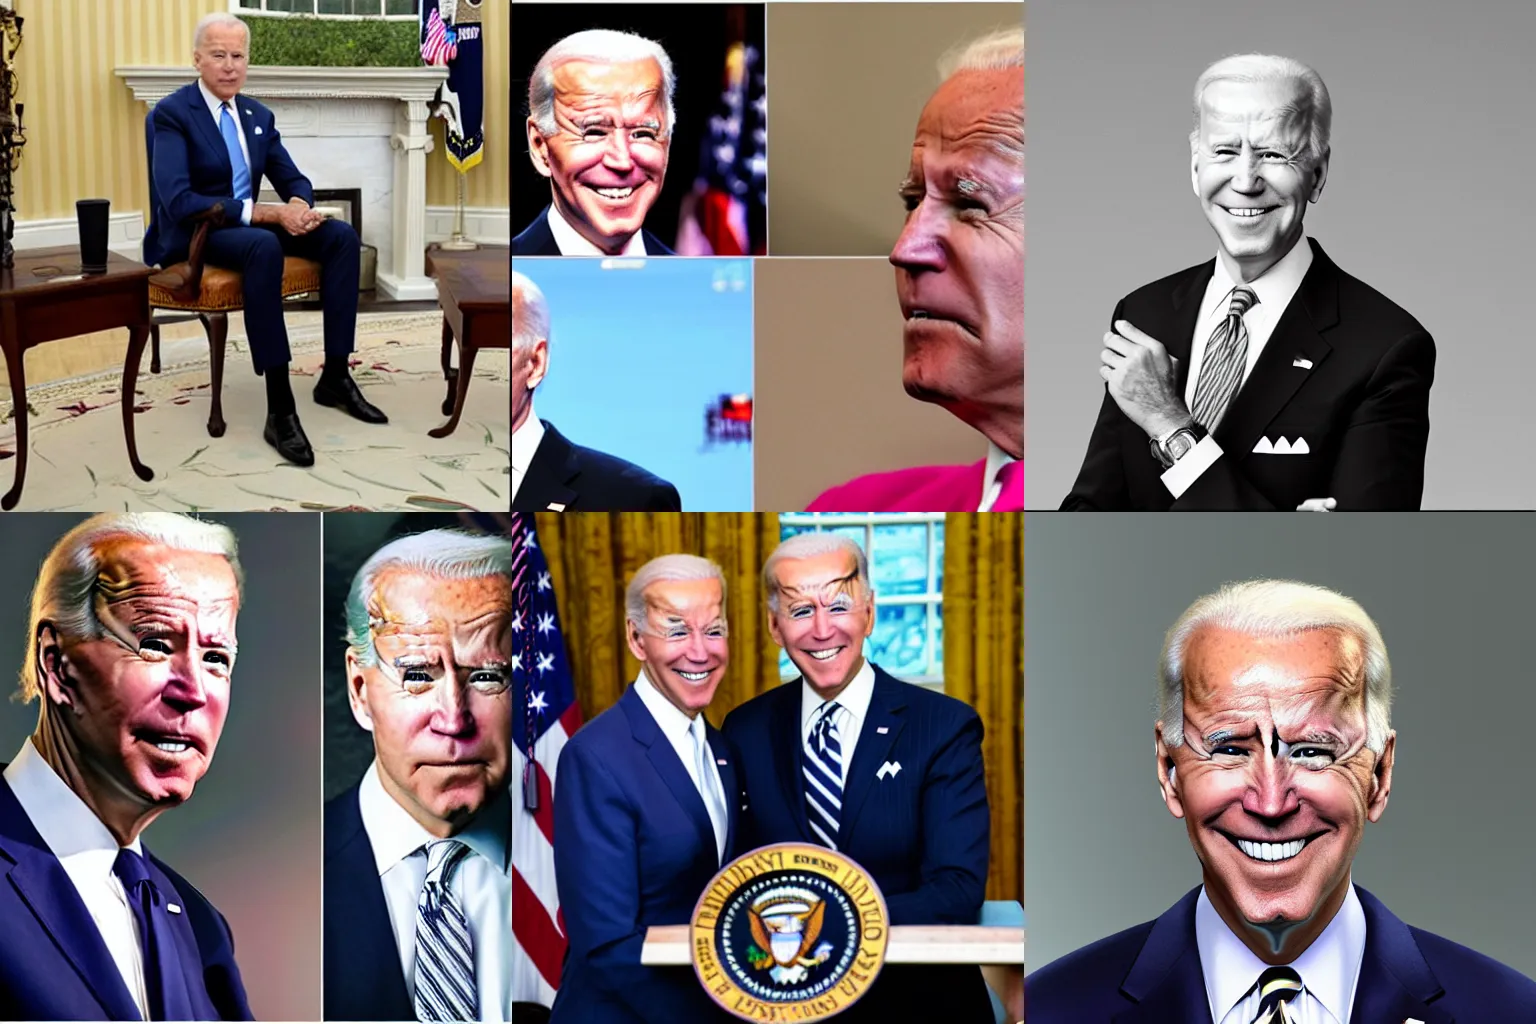 Prompt: Joe Biden as a femboy